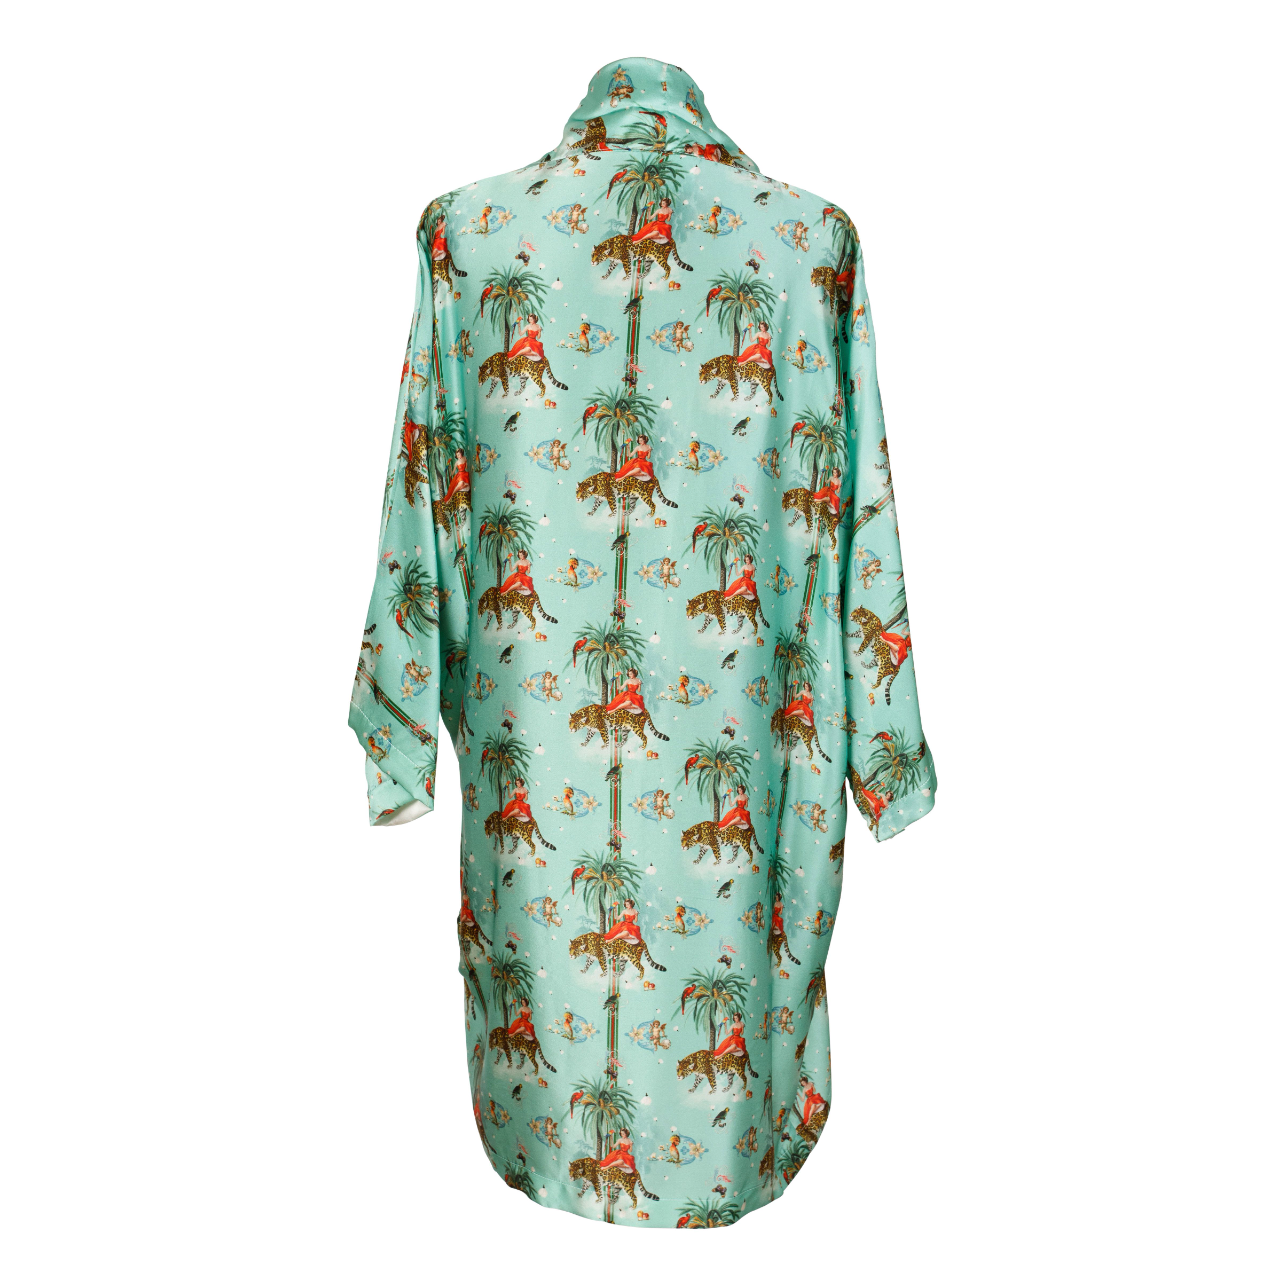 Back view of luxury 100% silk kimono in a maximalist retro Tiger and Pin Up design